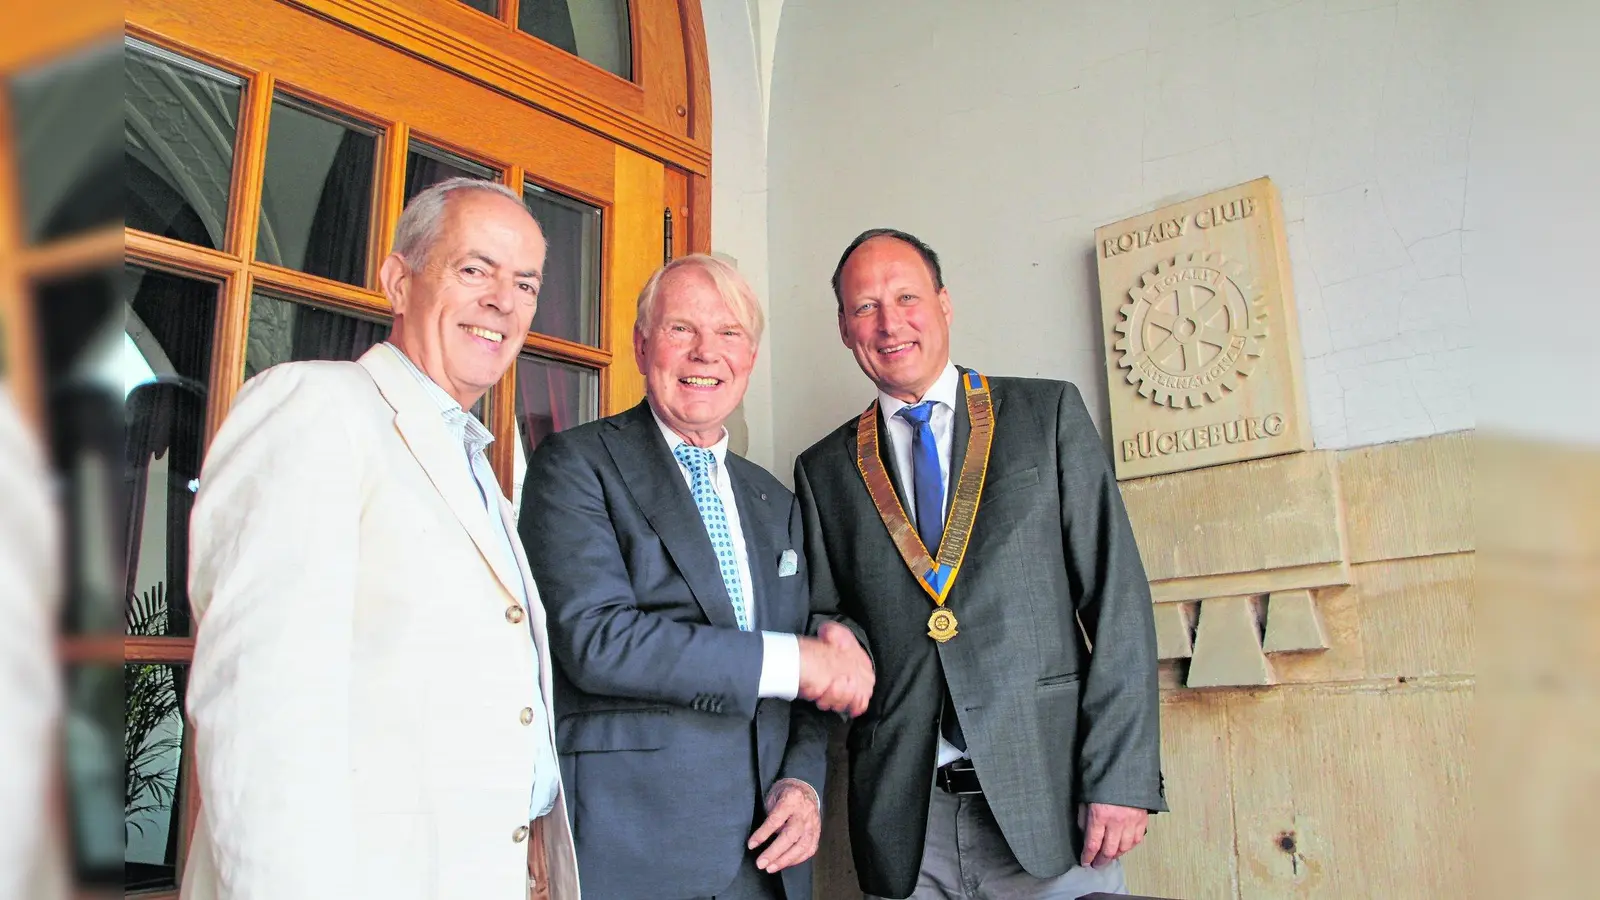 Präsidentenwechsel beim Rotary Club Bückeburg (Foto: nh)